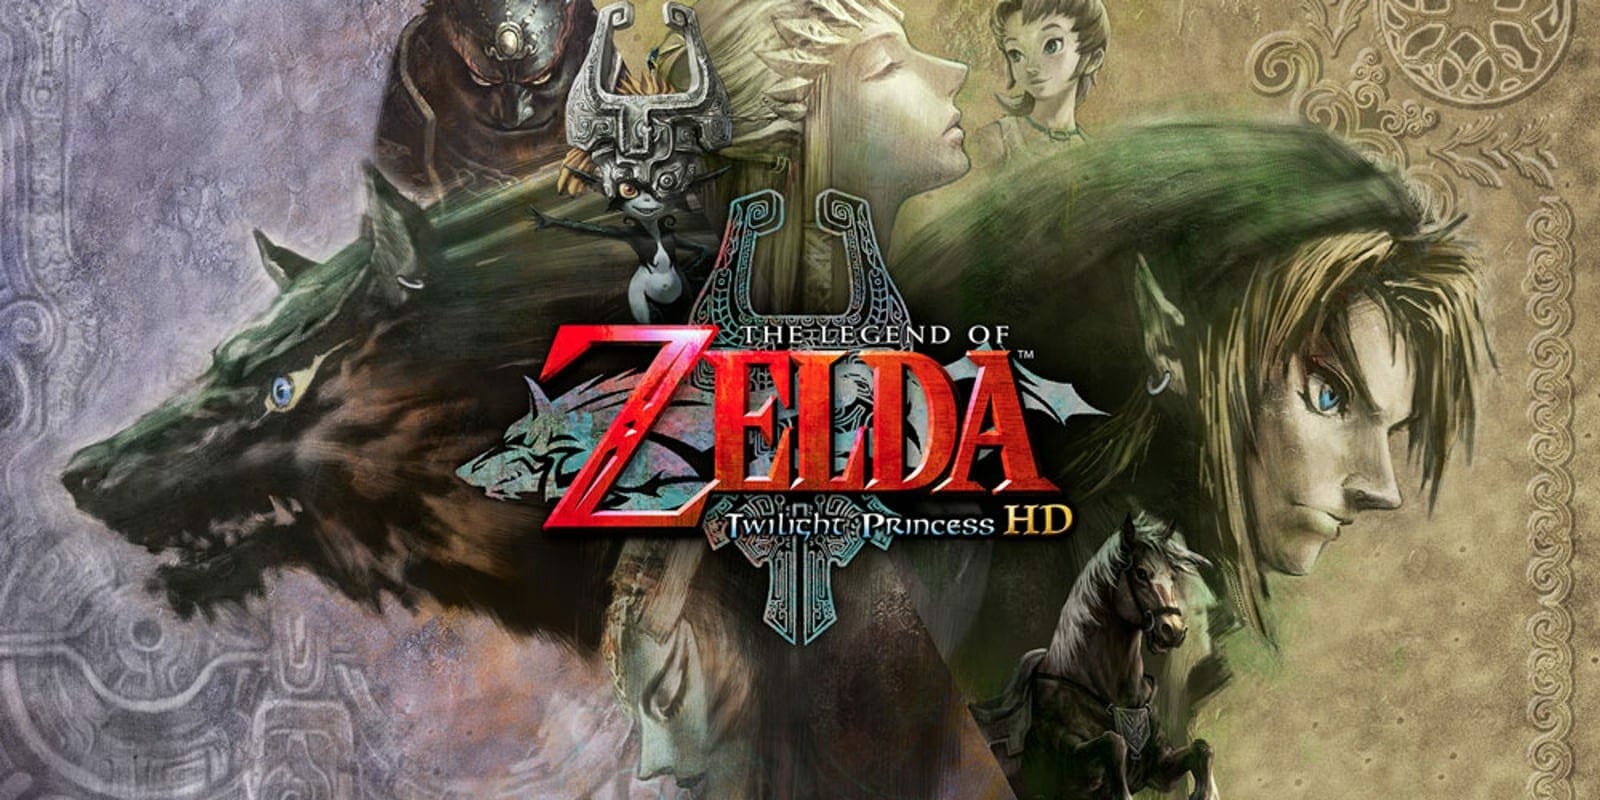 Best Zelda Games on PC